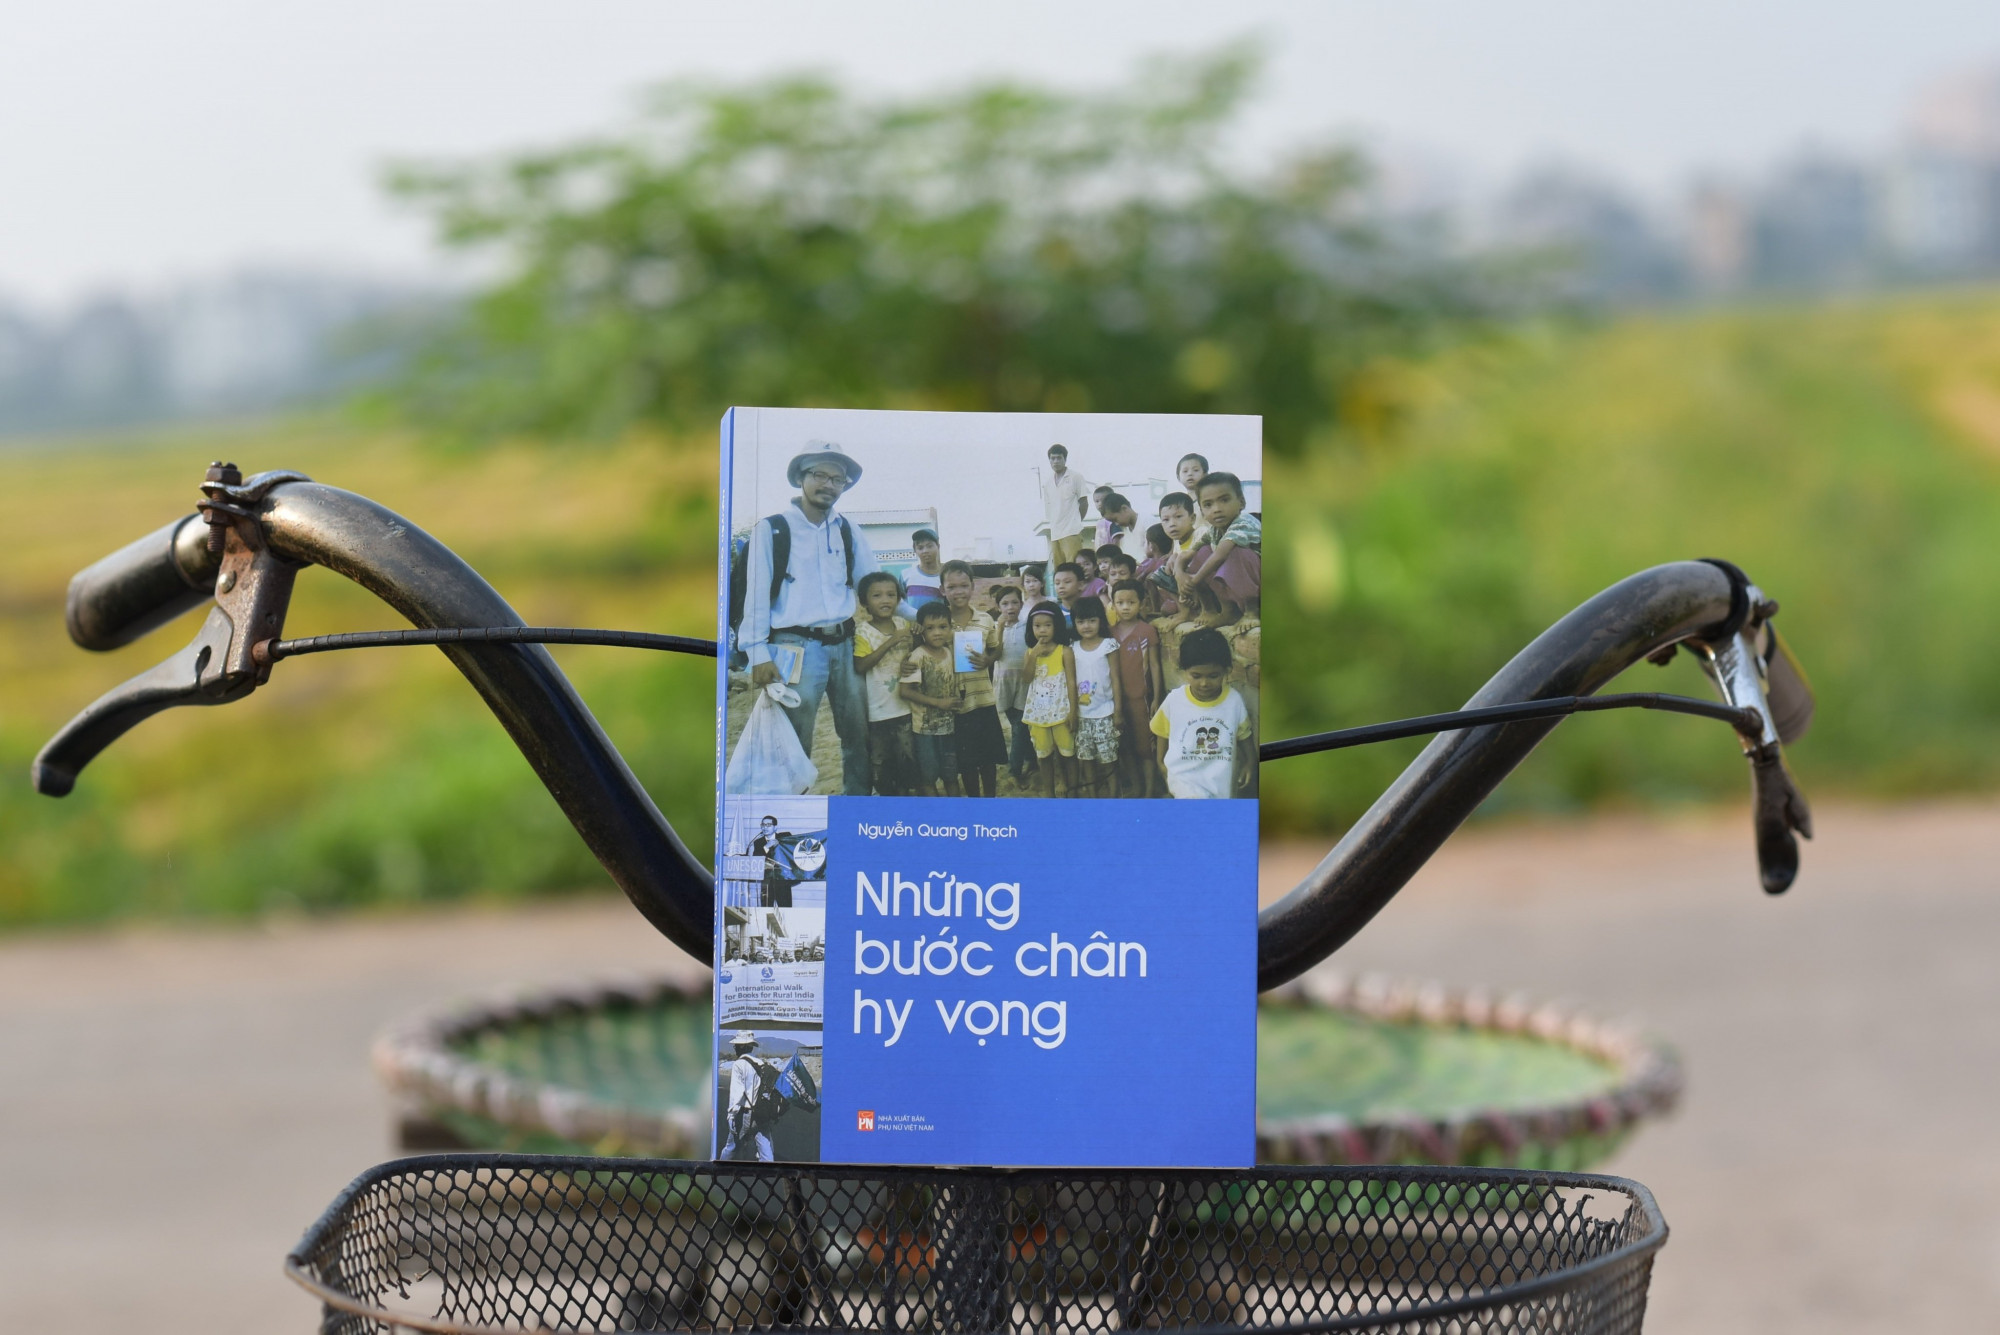 Cuốn sách chứa đựng nhiều chia sẻ tâm huyết của Nguyễn Quang Thạch về sách hóa nông thôn. Ảnh: Nguyễn Tiến Thành